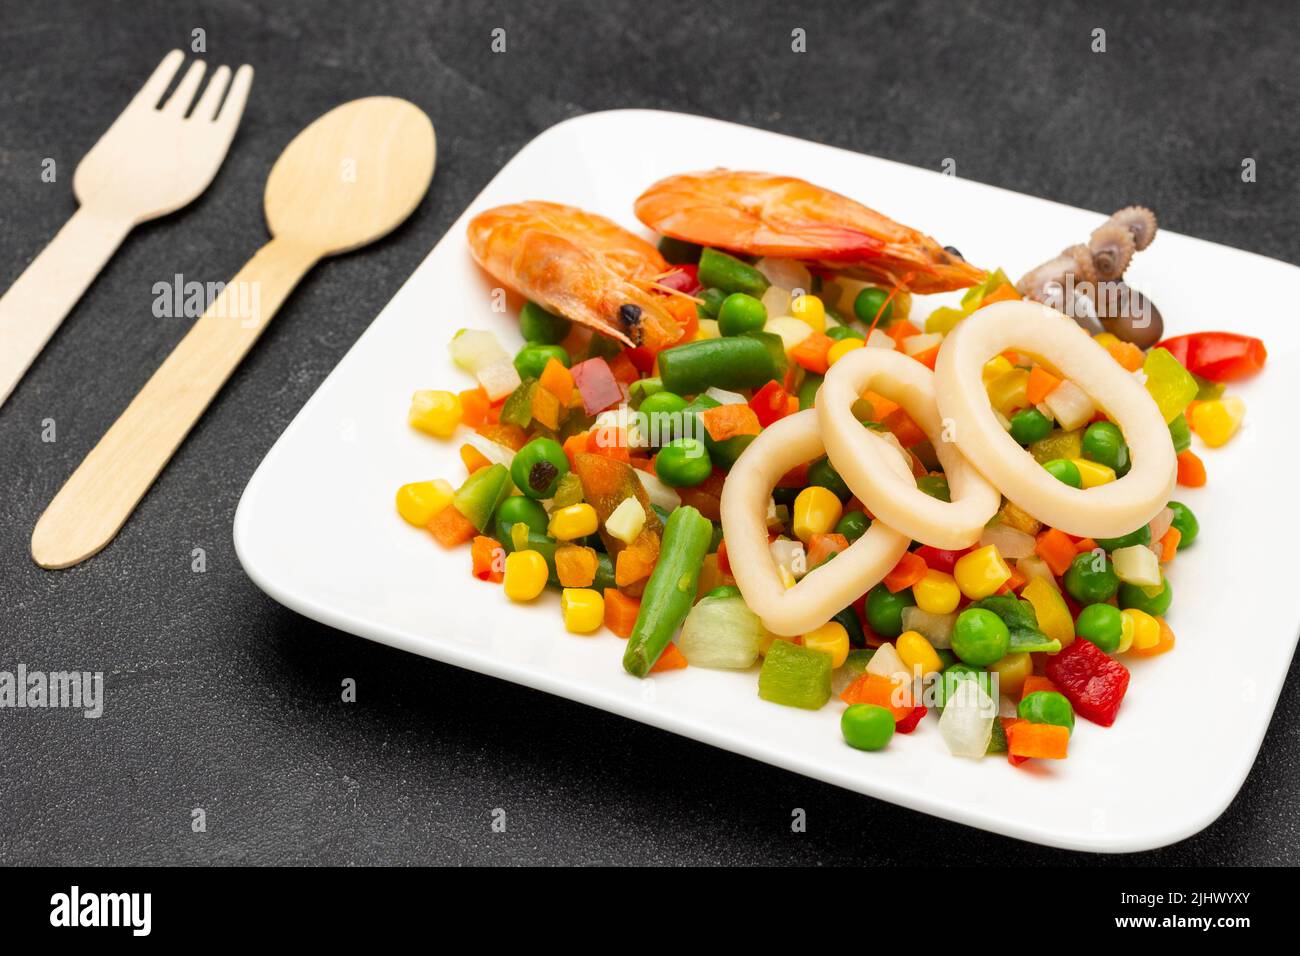 Anillos de camarones y calamares con verduras mezcladas sobre un plato blanco. Cuchara y tenedor sobre la mesa. Vista superior. Fondo negro Foto de stock